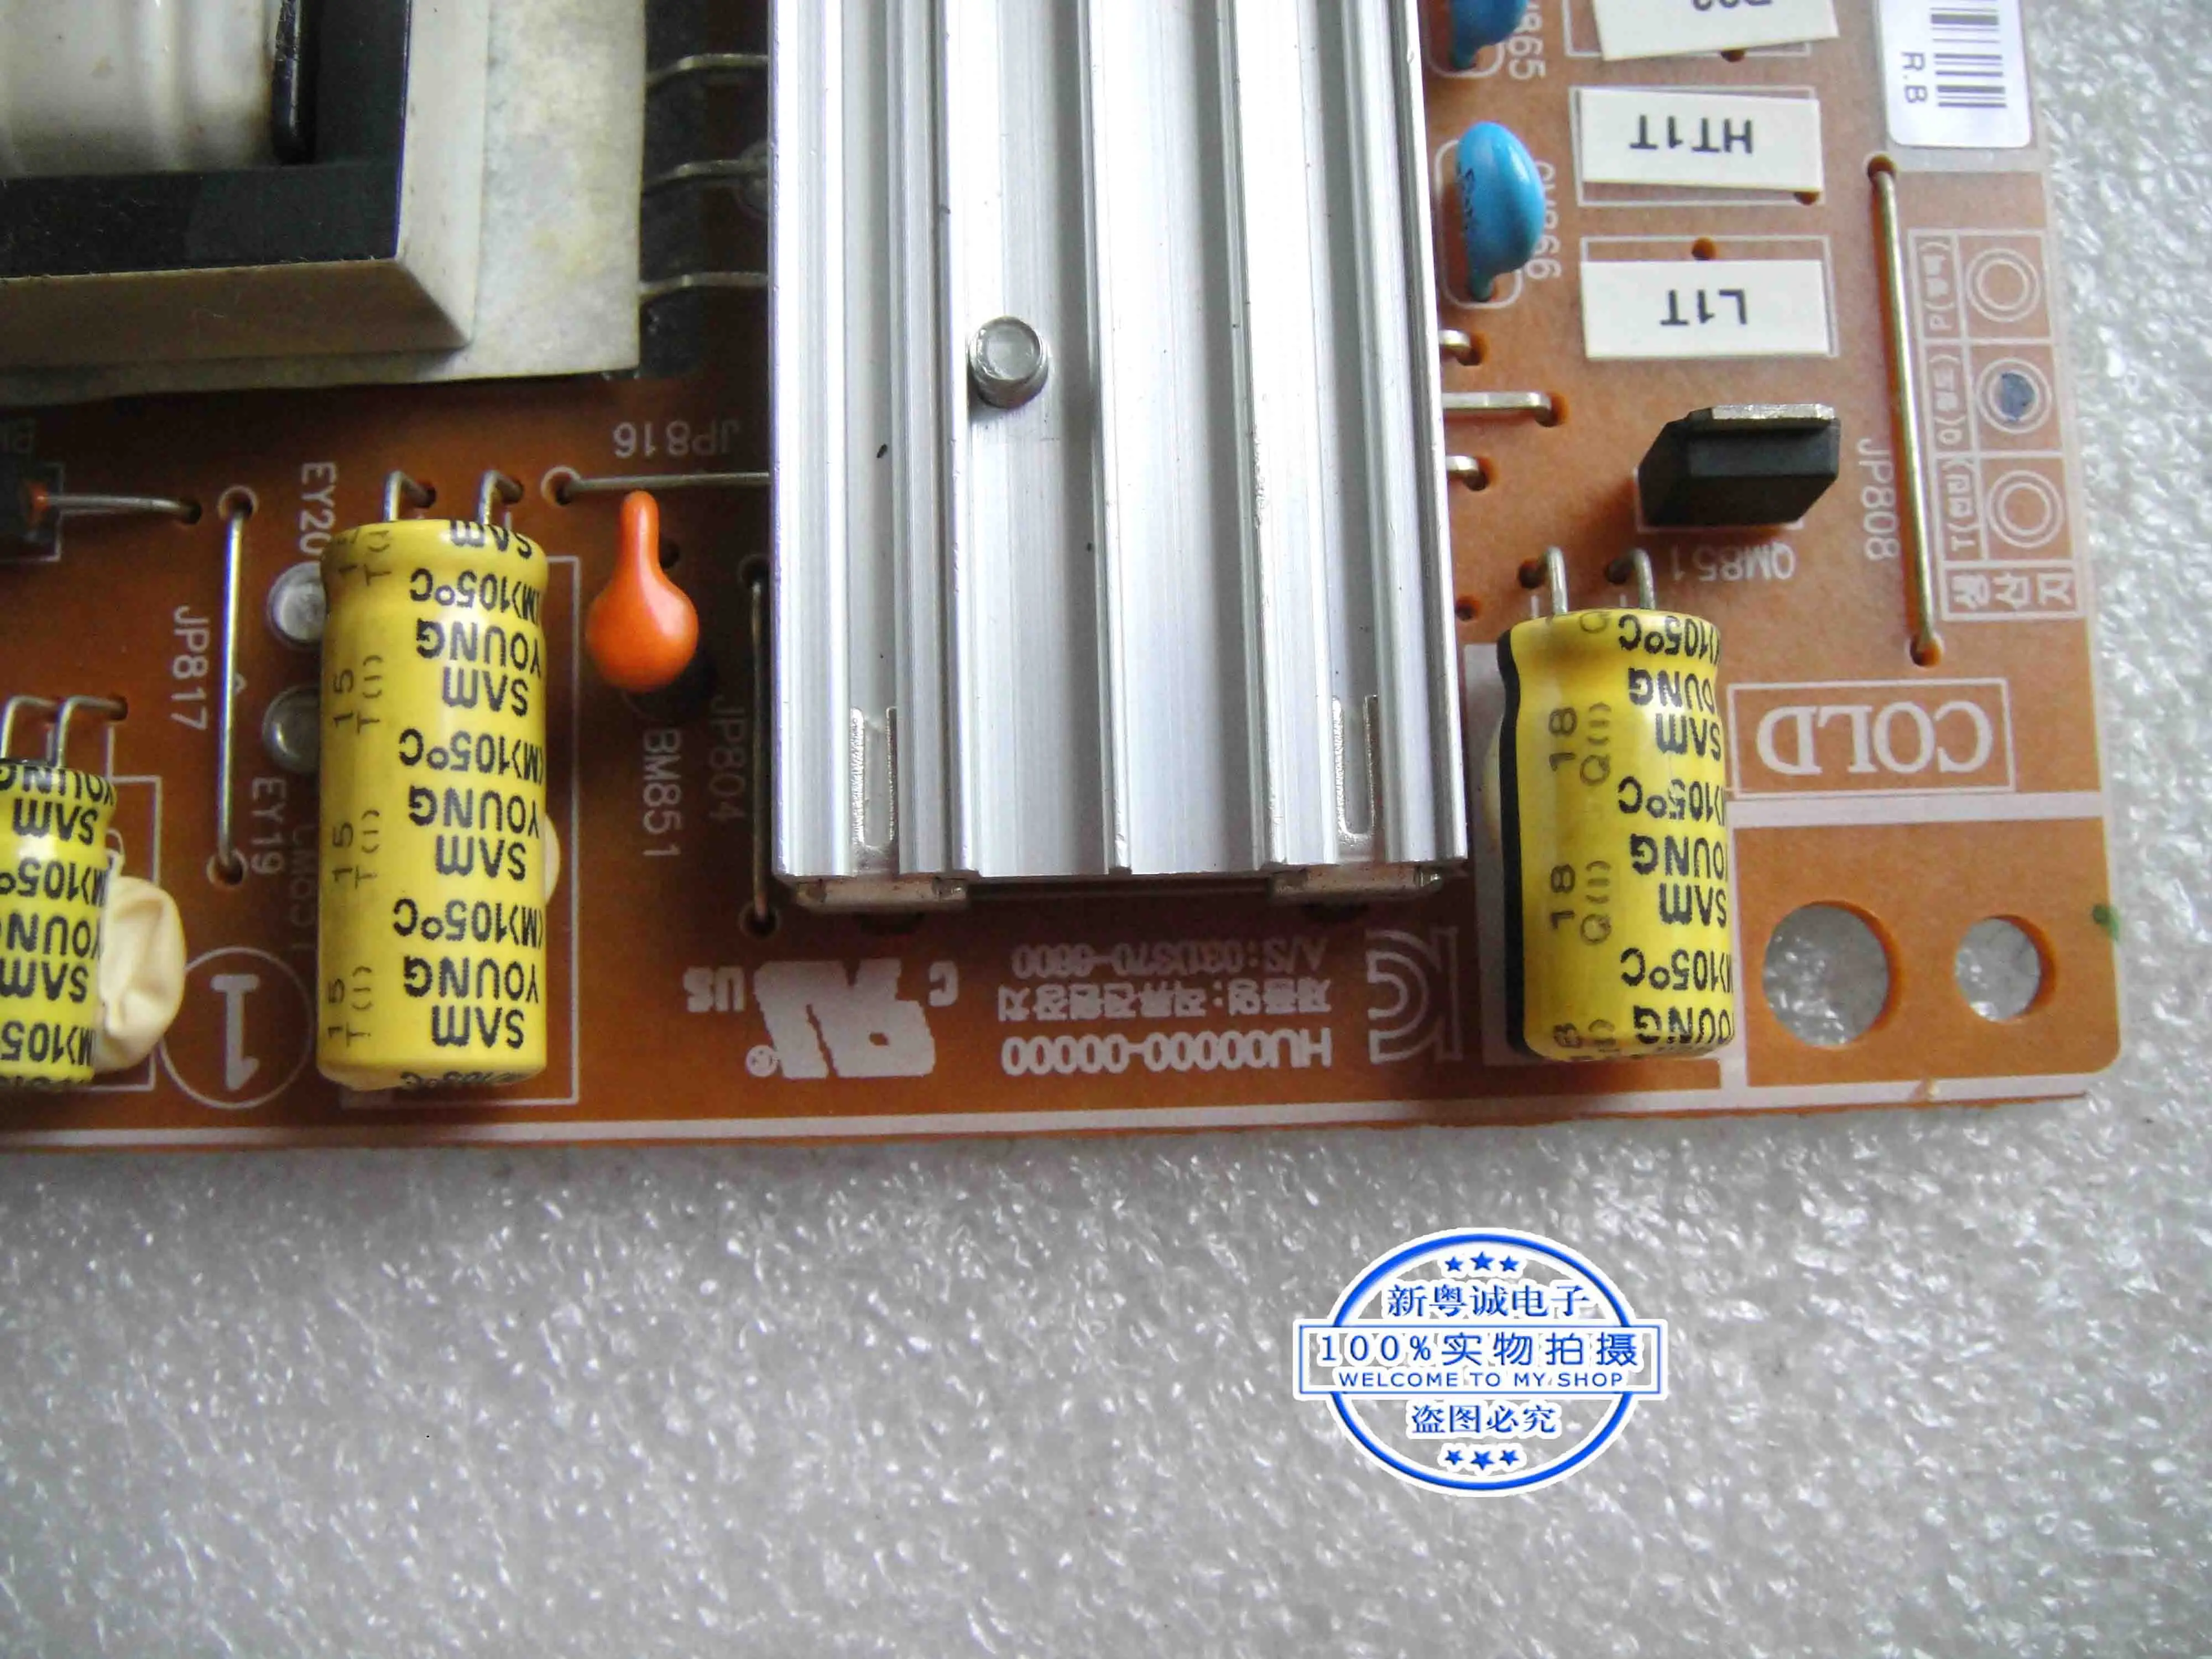 LT24A350AR/XF power board BN44-00448A PD22A0_BDY high pressure board